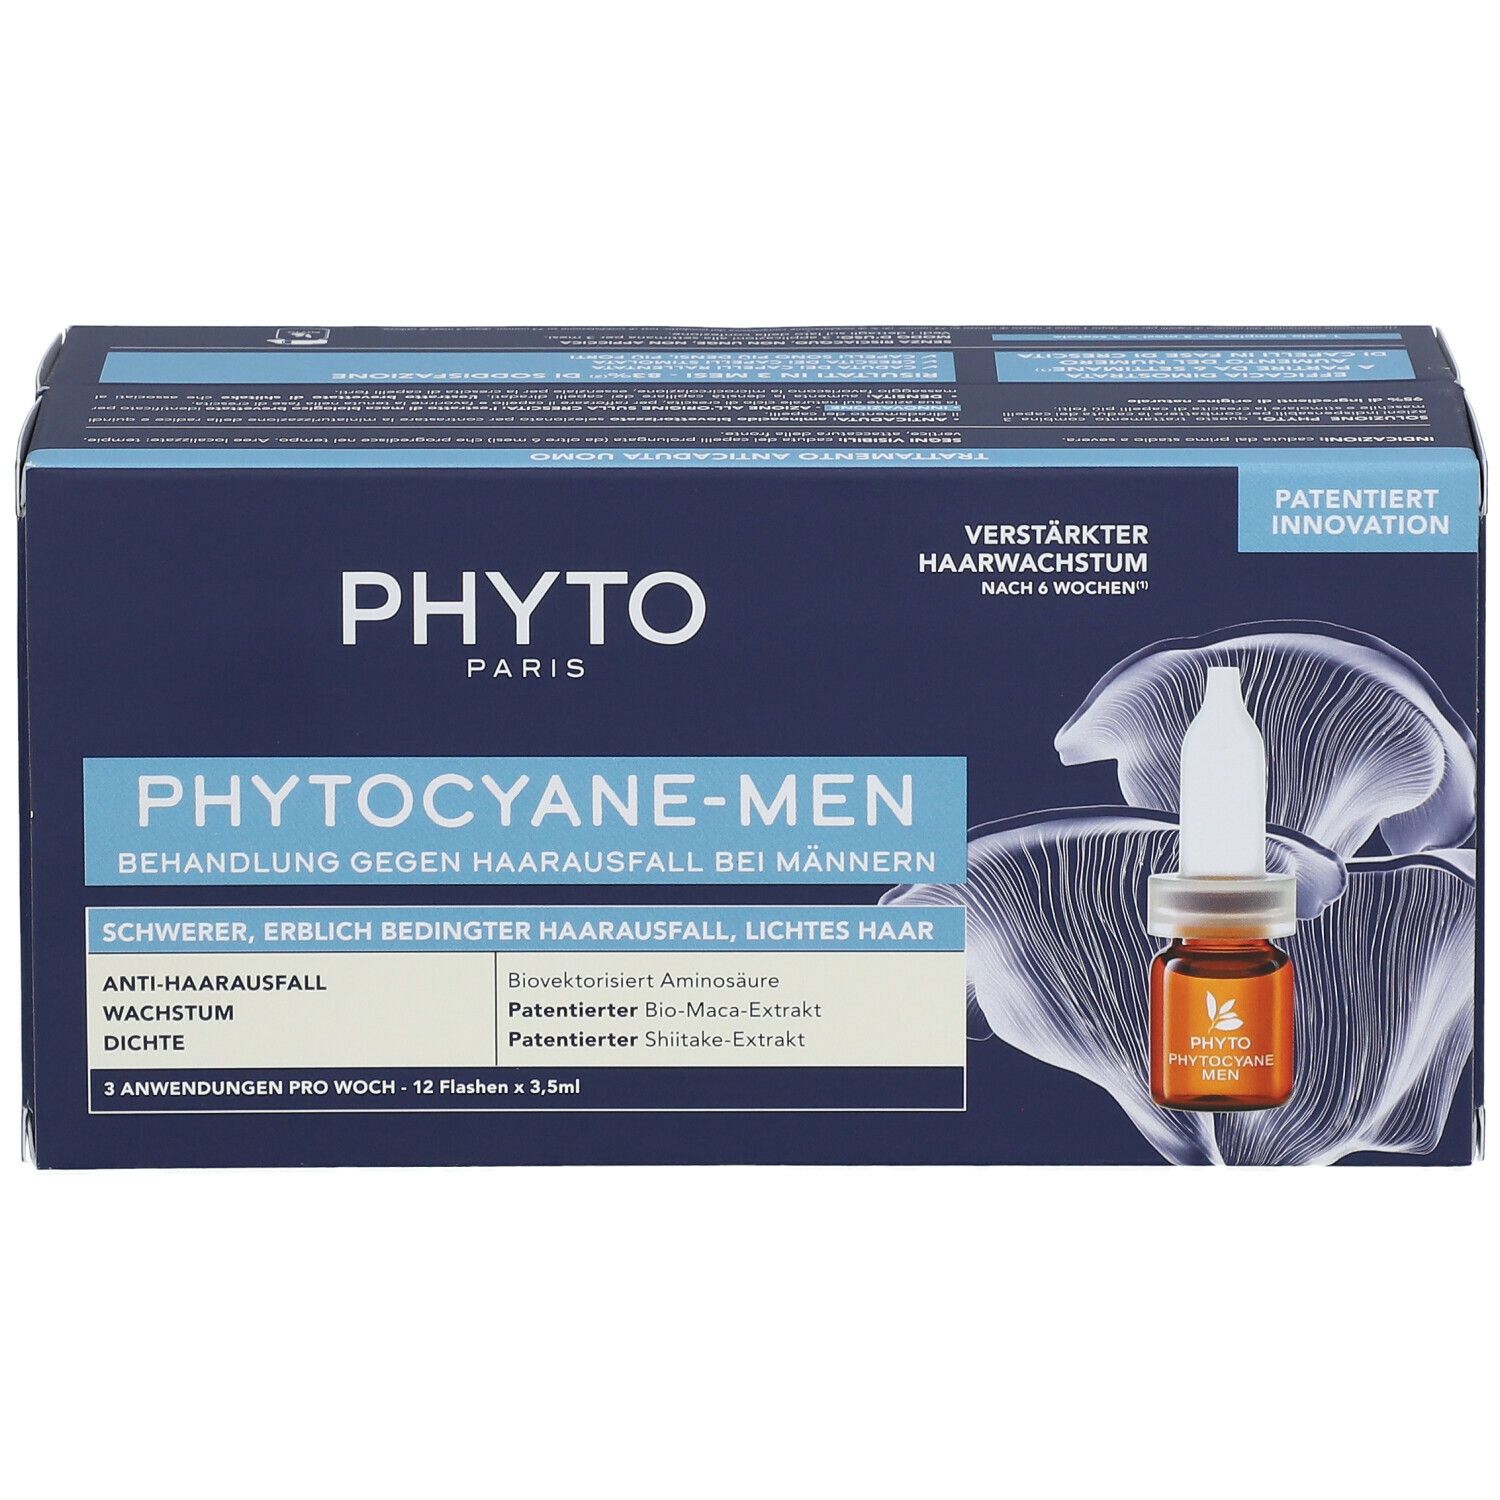 PHYTO  PHYYTOCANE-MEN